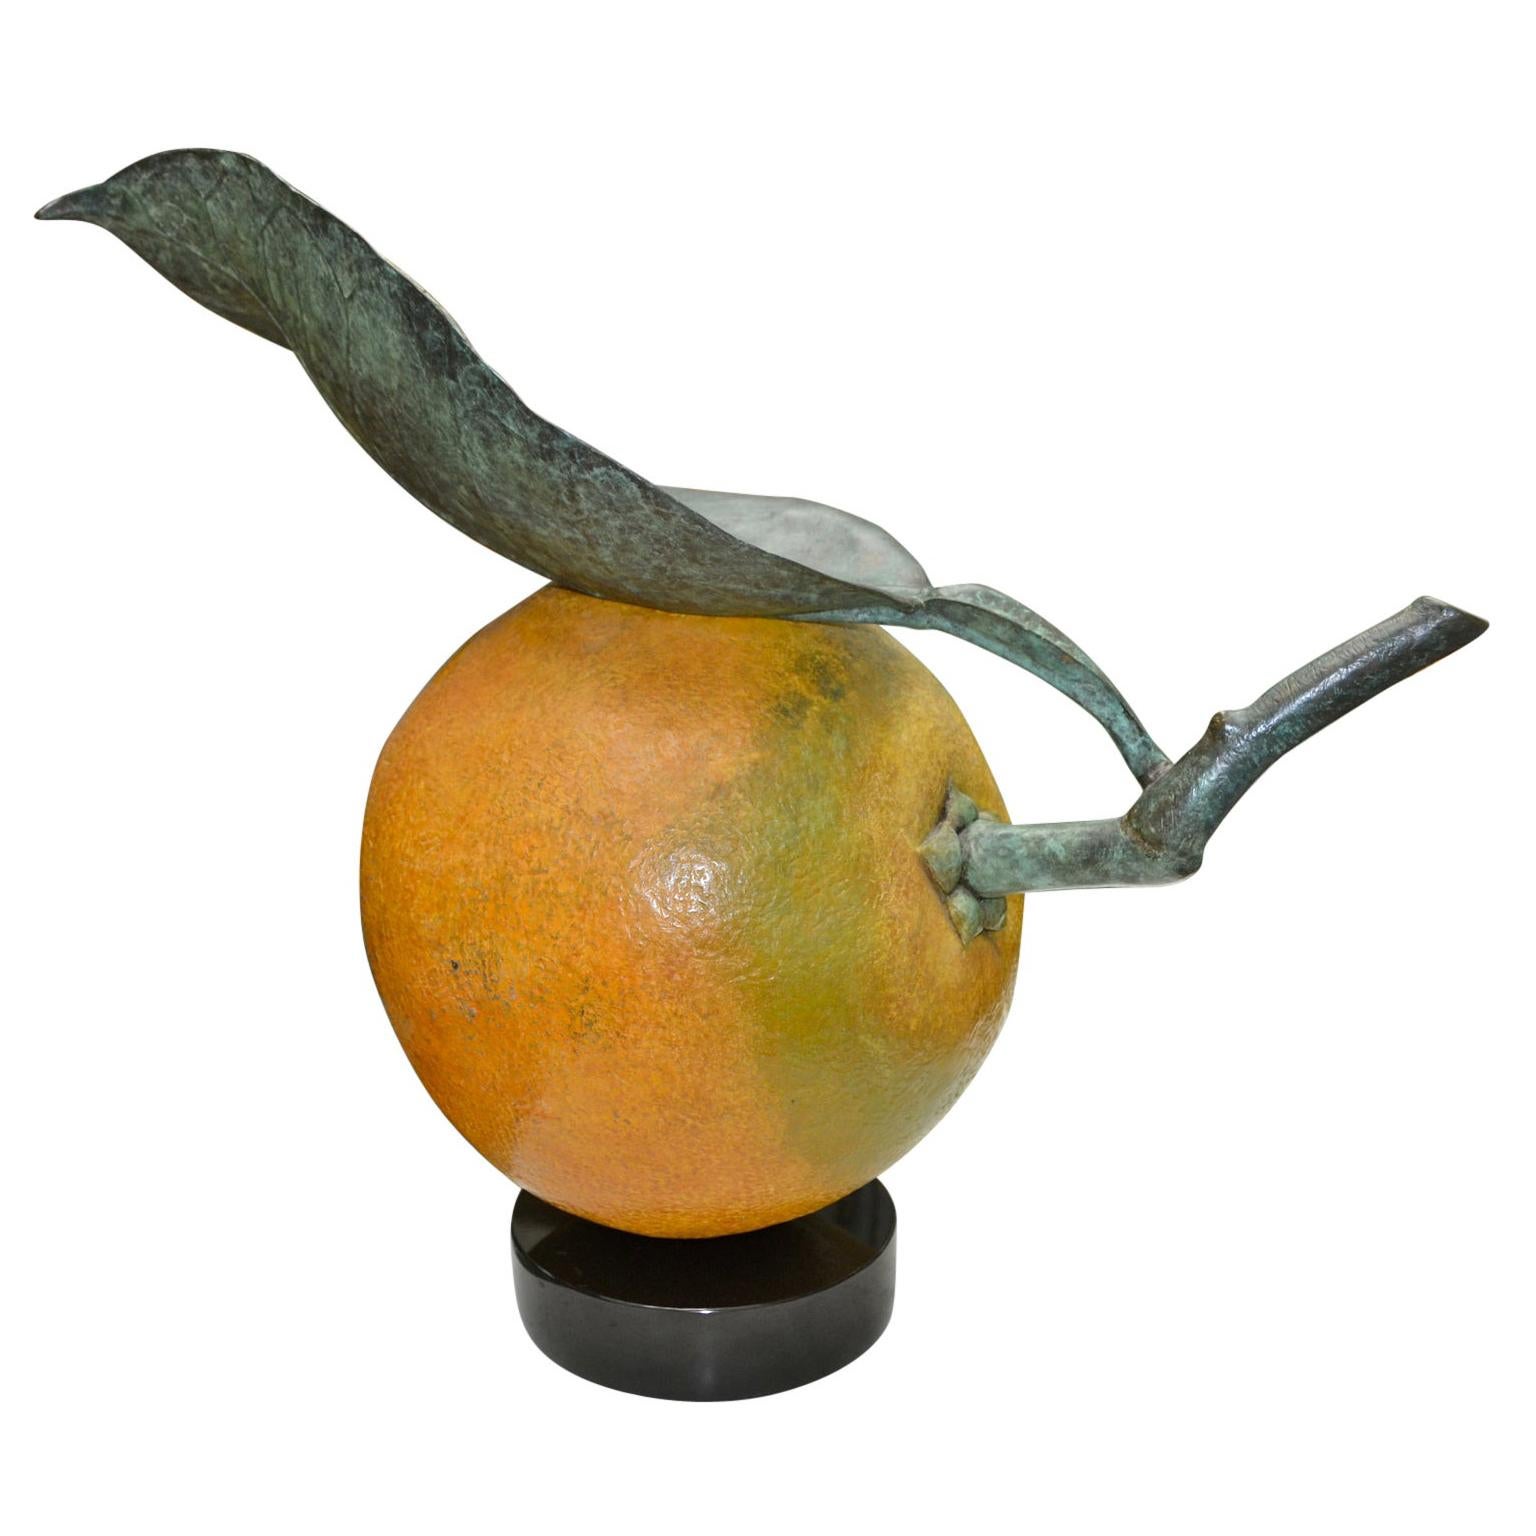 Bronze Navel Orange by Luis Montoya and Leslie Ortiz Known as Popliteo